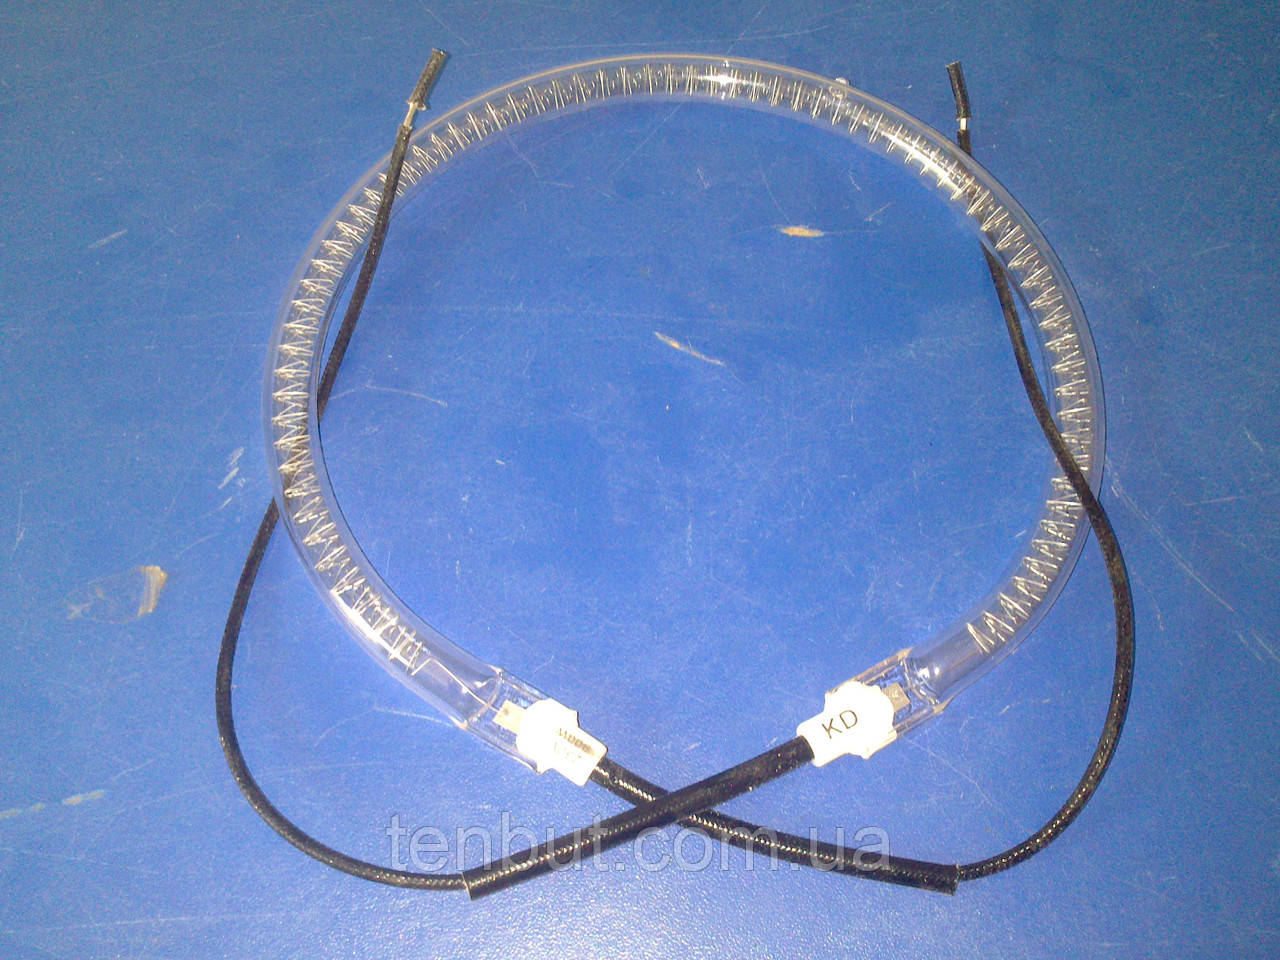 Тен лампа (нагрівач) для аерогриля 1200 Вт. / 220 В. / діаметр Ø150 мм